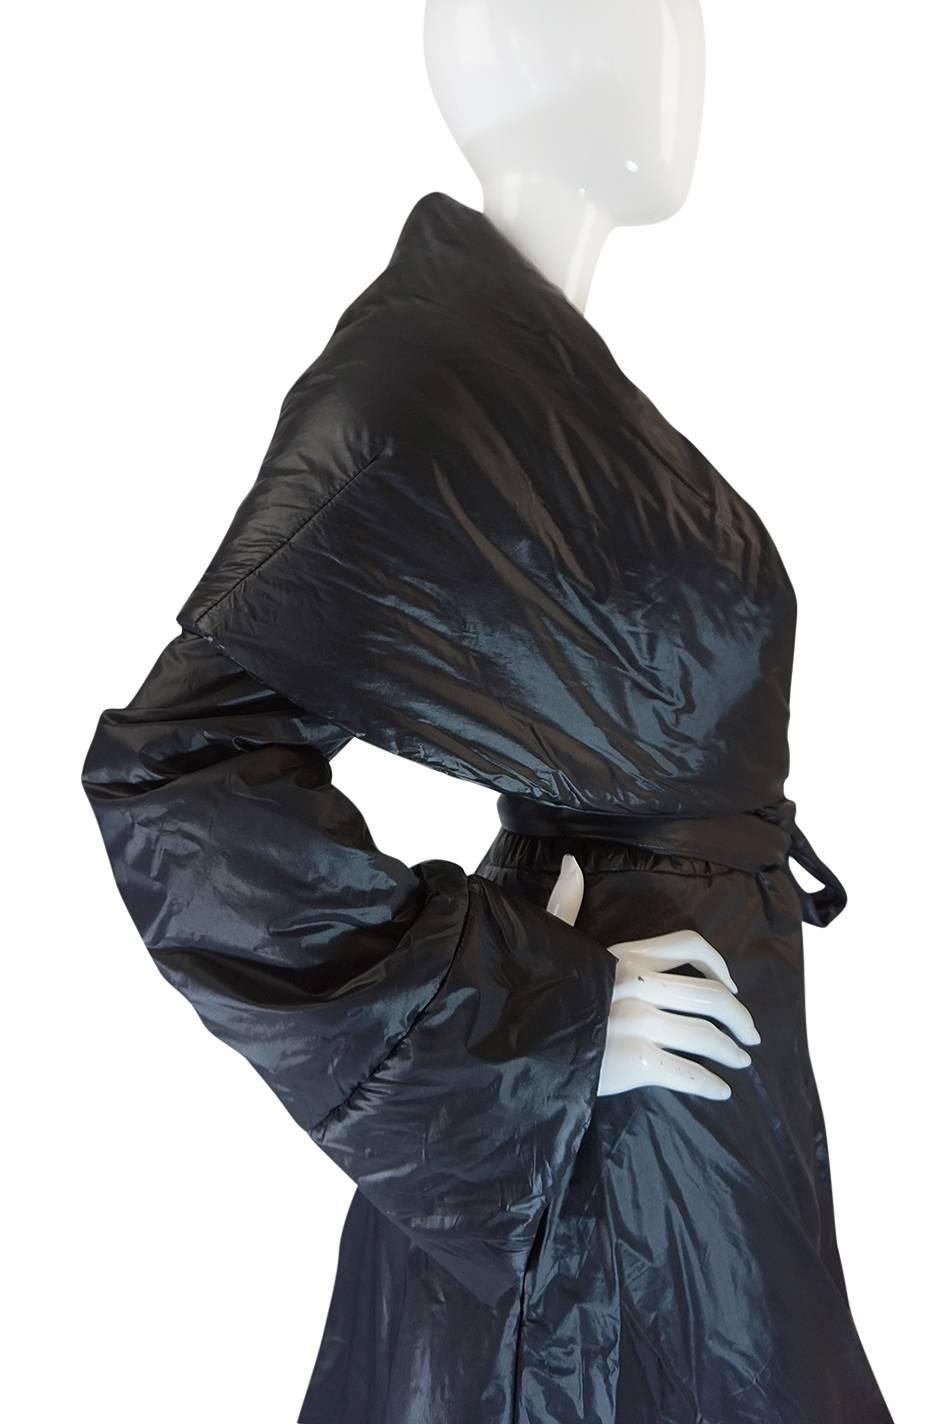 Women's 1980s OMO Norma Kamali Black Sleeping Bag Coat with Hood